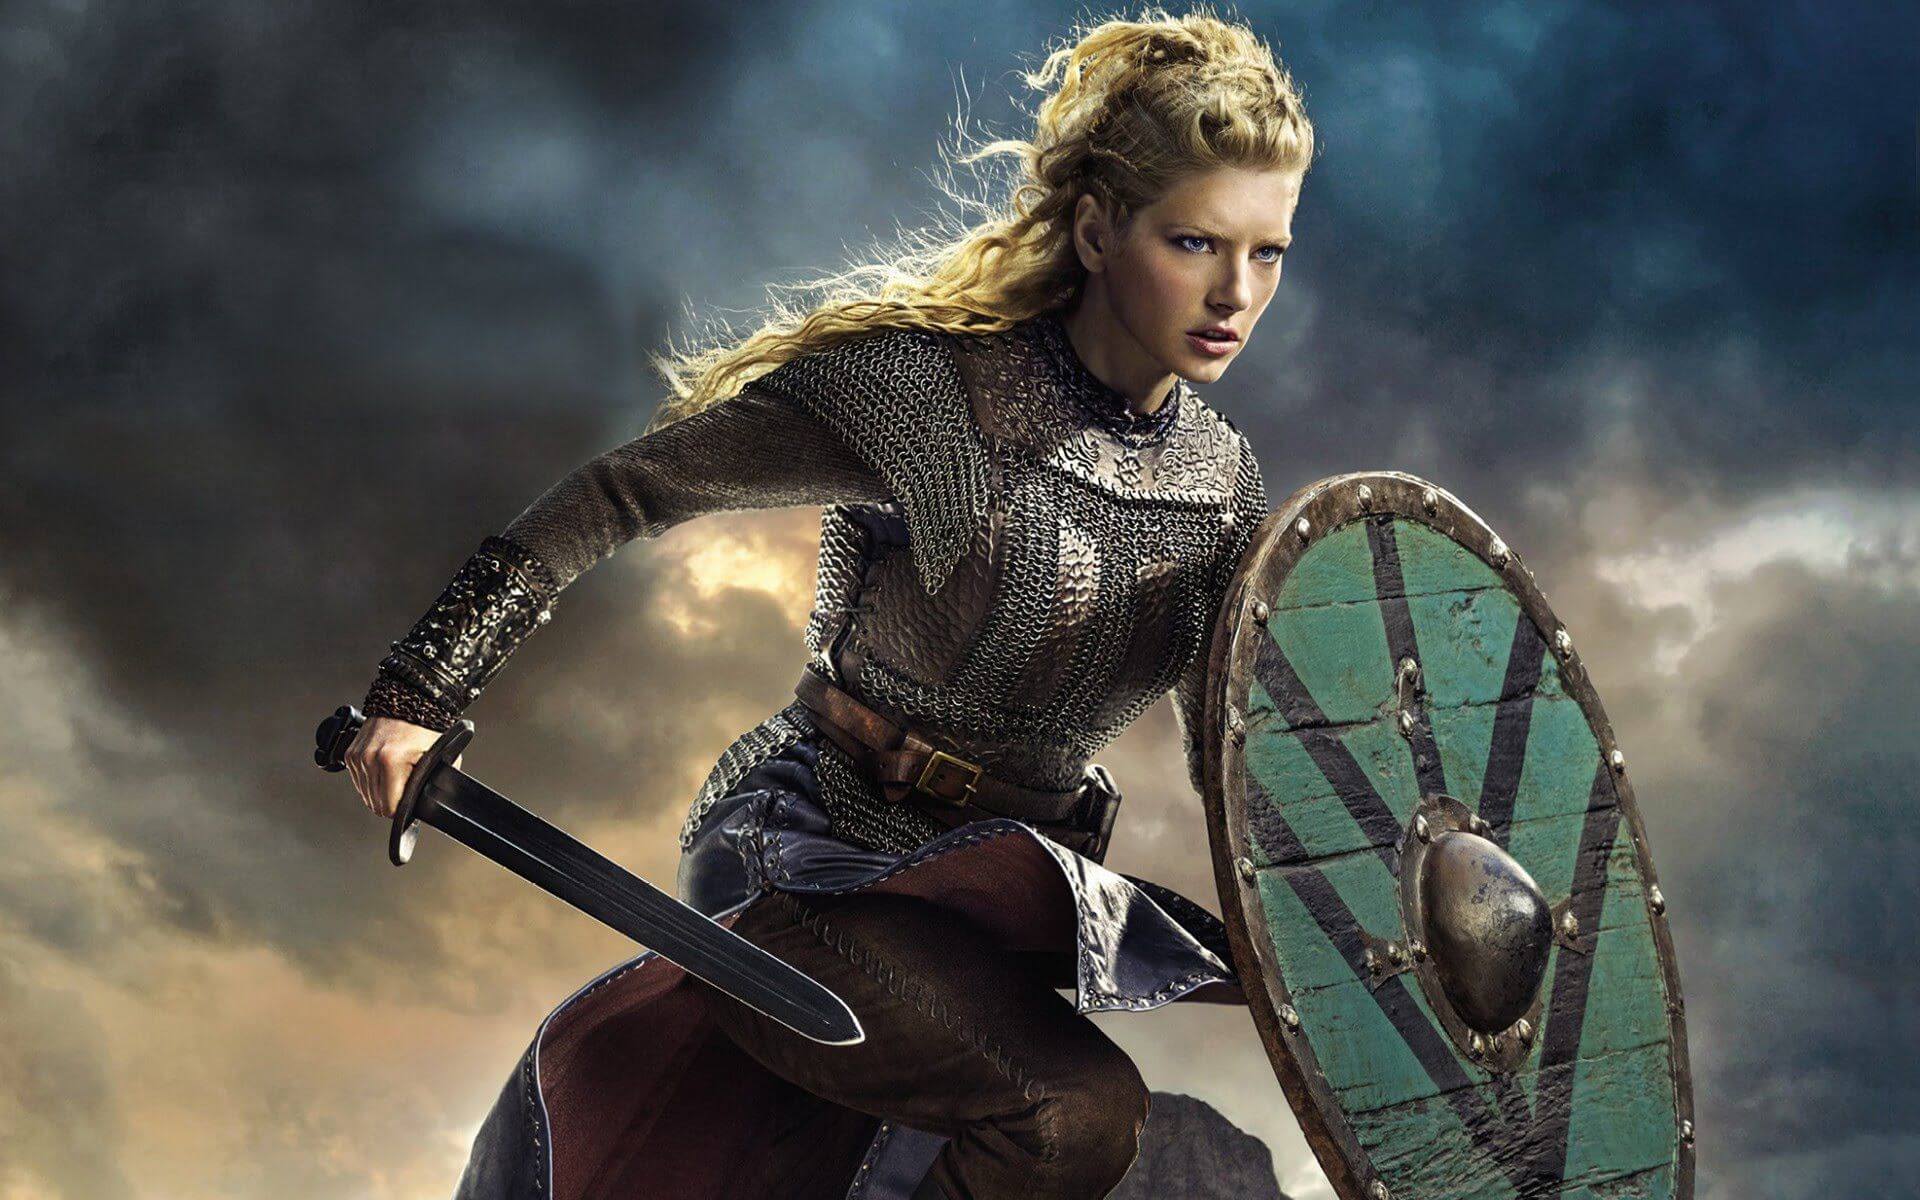 Shield - Vikings Lagertha - HD Wallpaper 